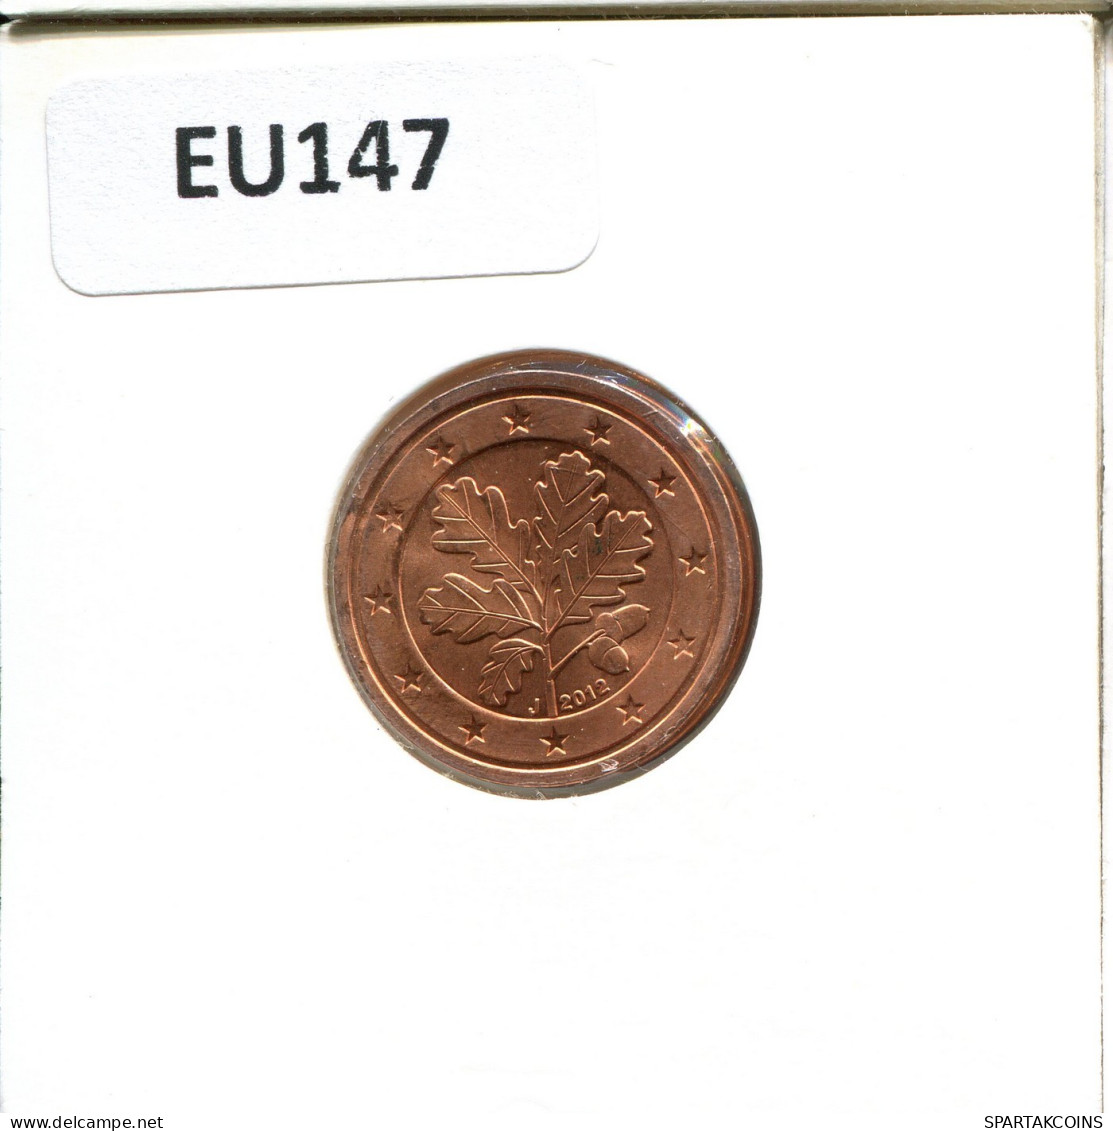 2 EURO CENTS 2012 ALEMANIA Moneda GERMANY #EU147.E.A - Germania